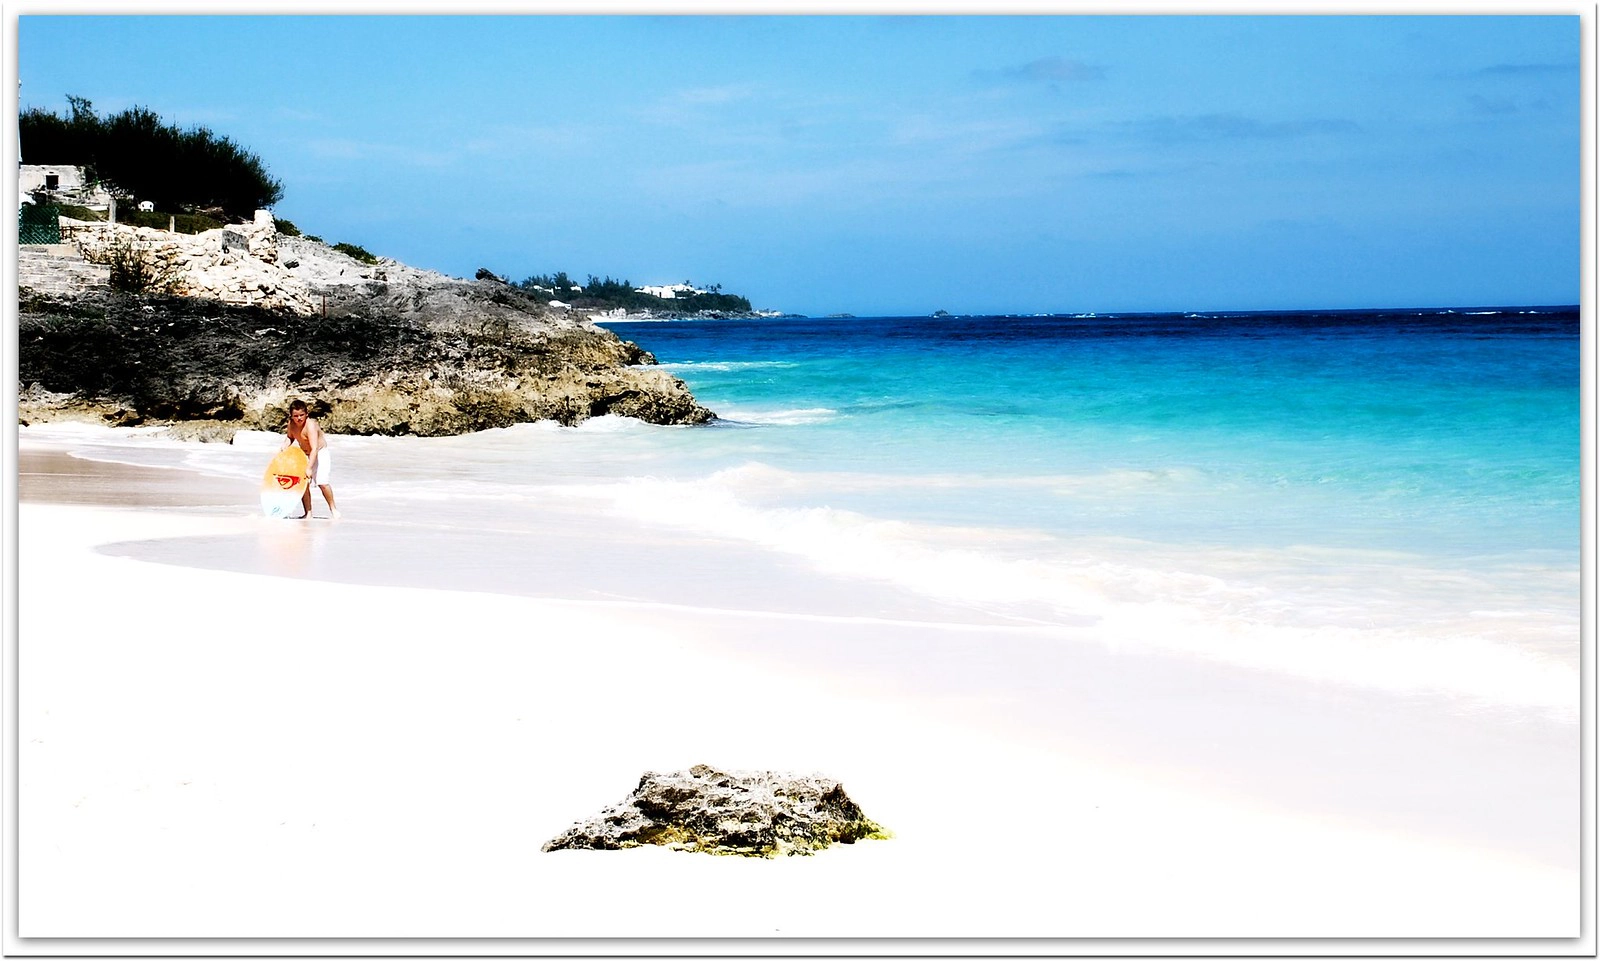  John Smith’s Bay  strand - Bermuda